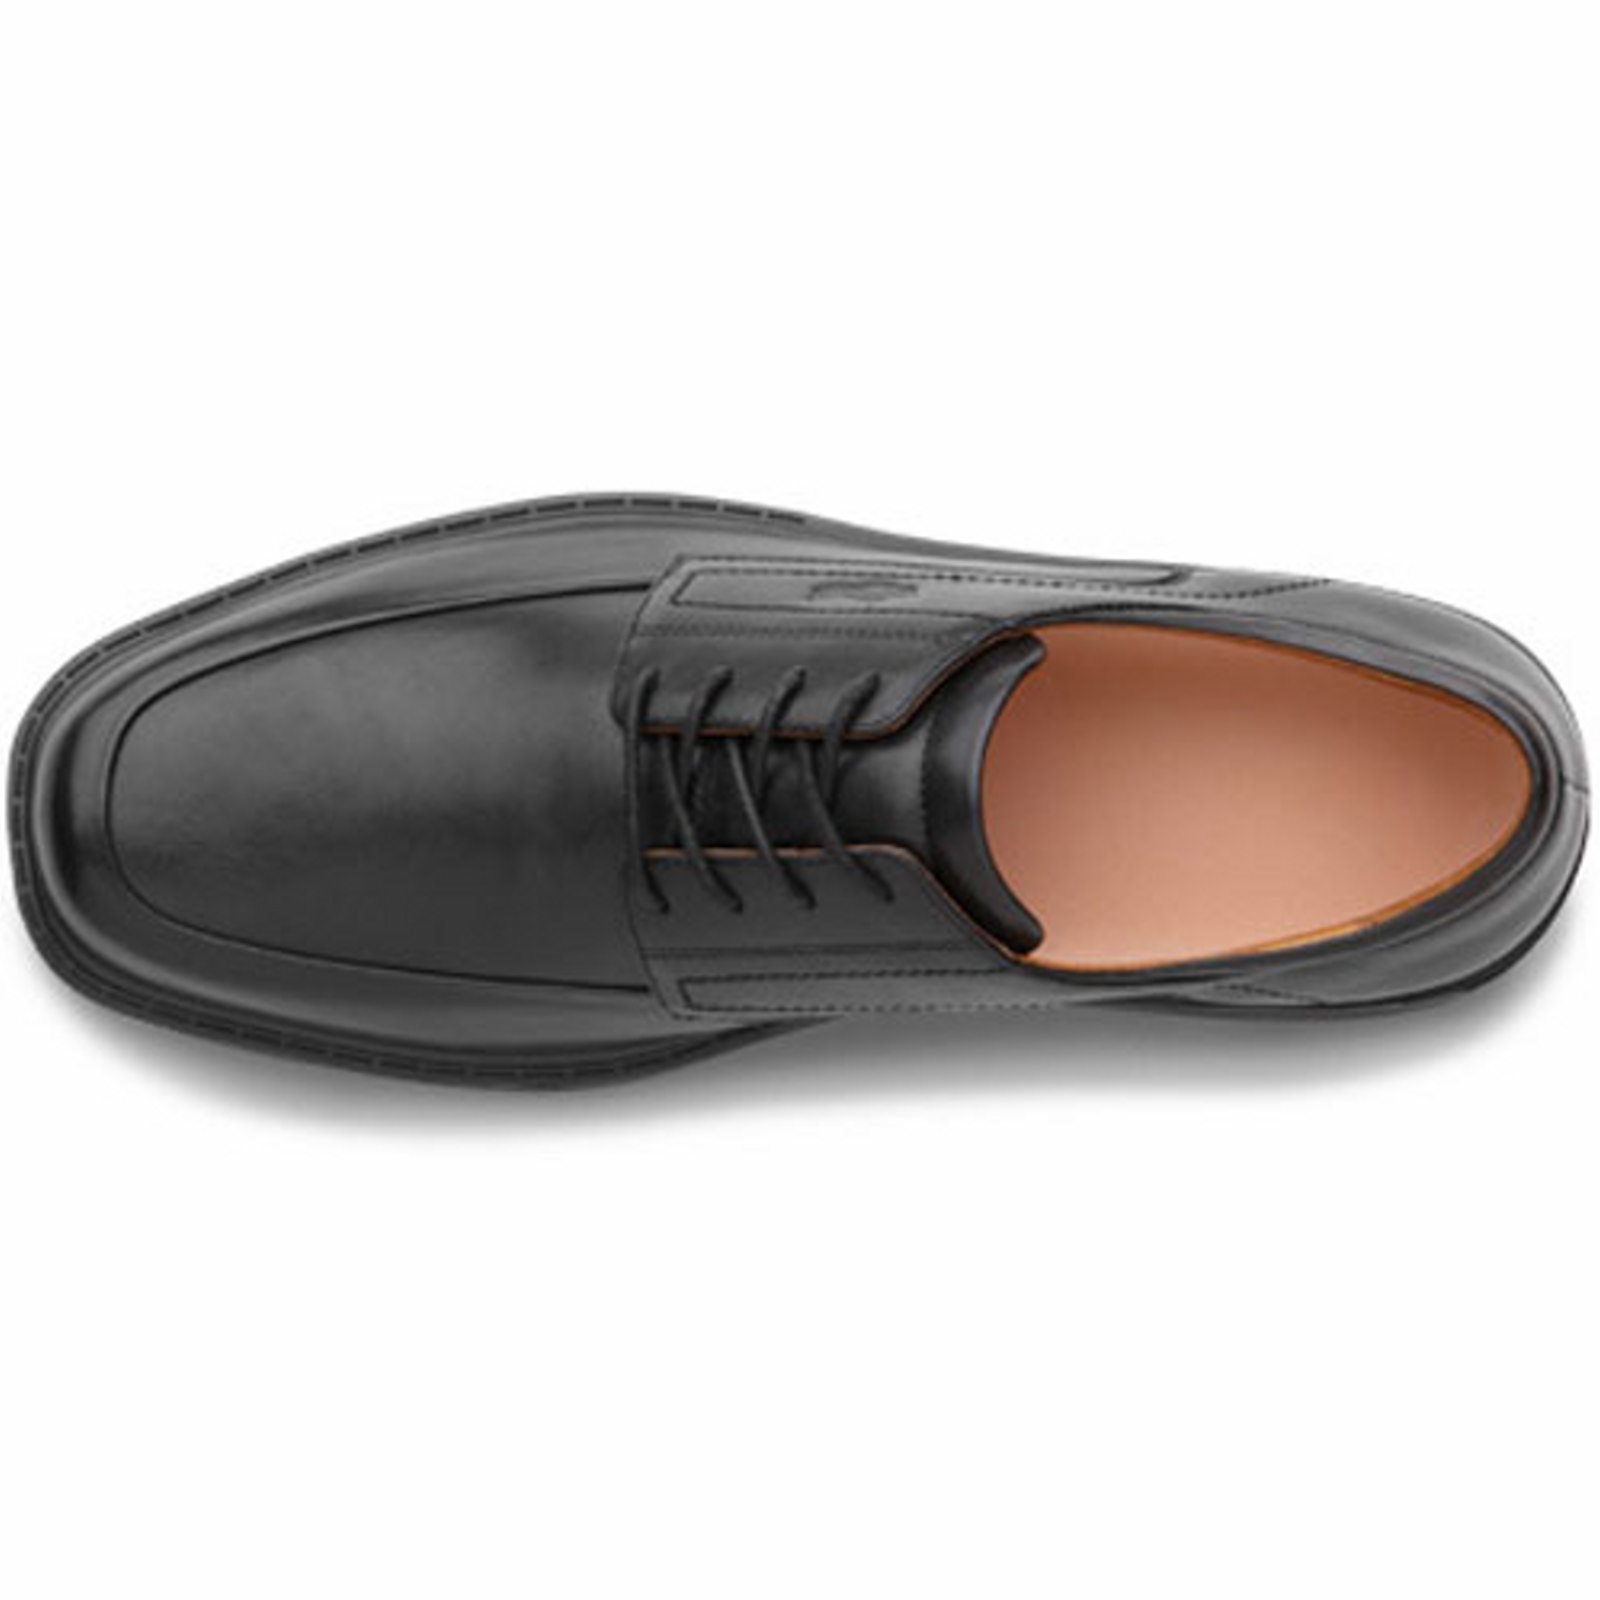 Dr. Comfort Classic Men's Dress Shoe: 9.5 Wide (E/2E) Black Lace - image 5 of 5